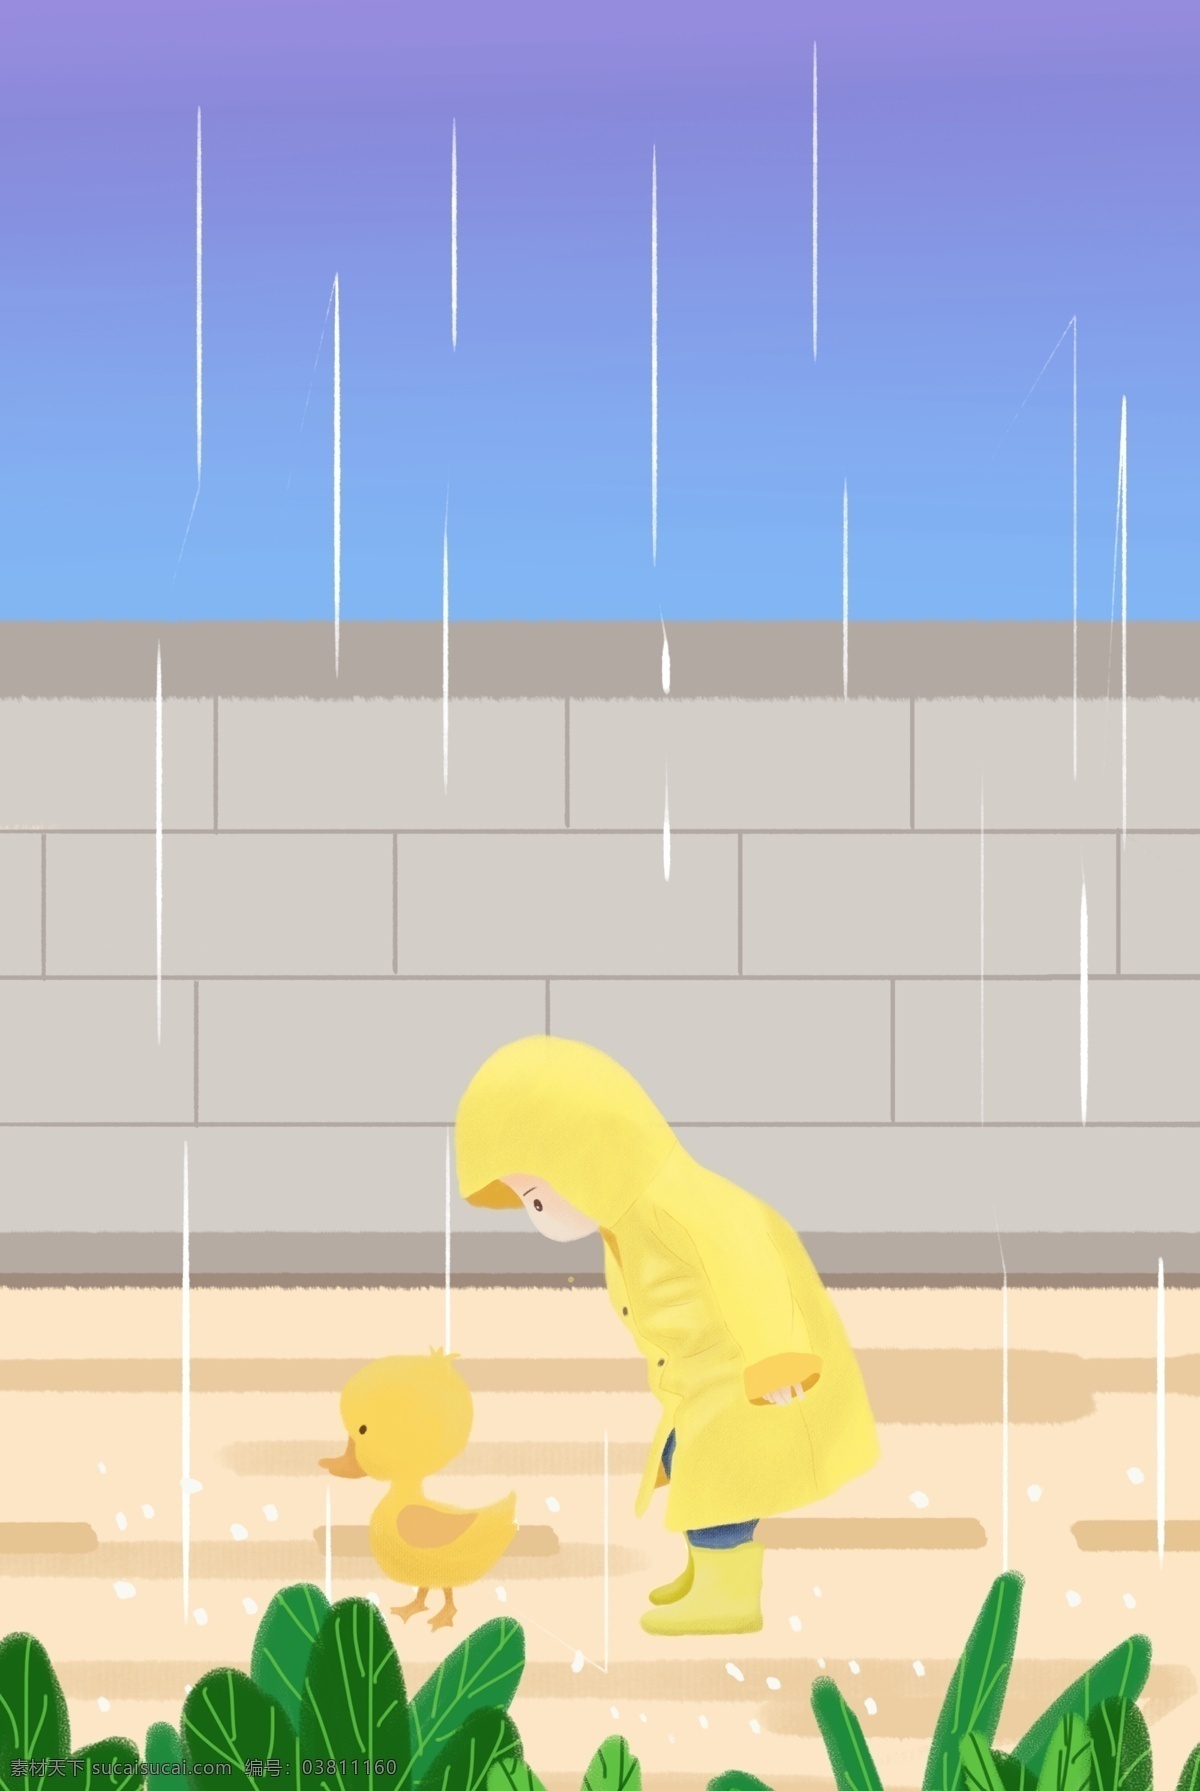 初春 雨 中 儿童 出行 母婴 海报 细雨 动物 清新 安全 插画风 促销海报